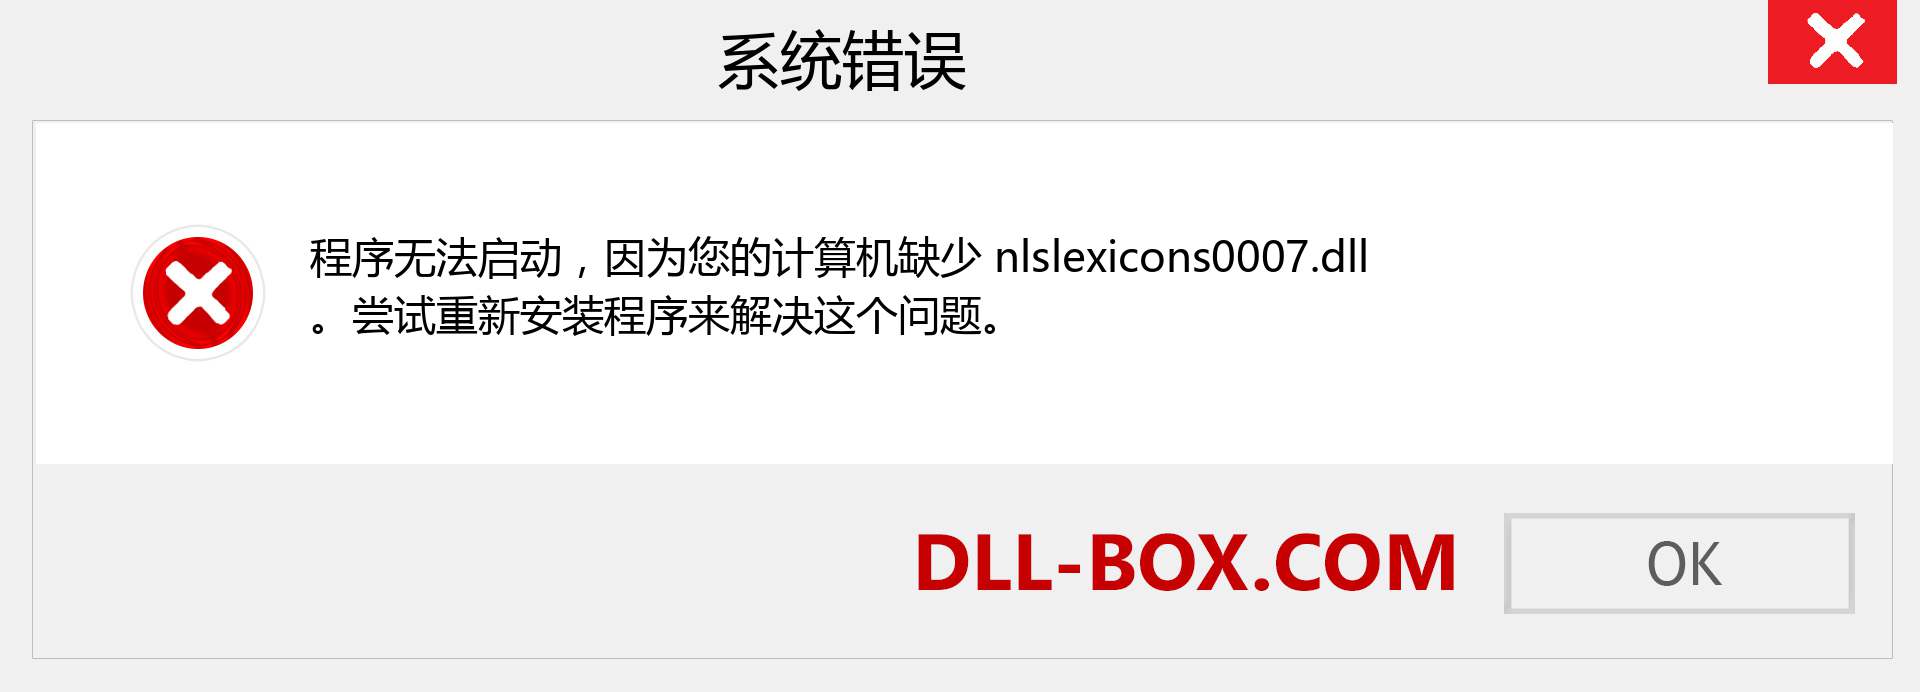 nlslexicons0007.dll 文件丢失？。 适用于 Windows 7、8、10 的下载 - 修复 Windows、照片、图像上的 nlslexicons0007 dll 丢失错误